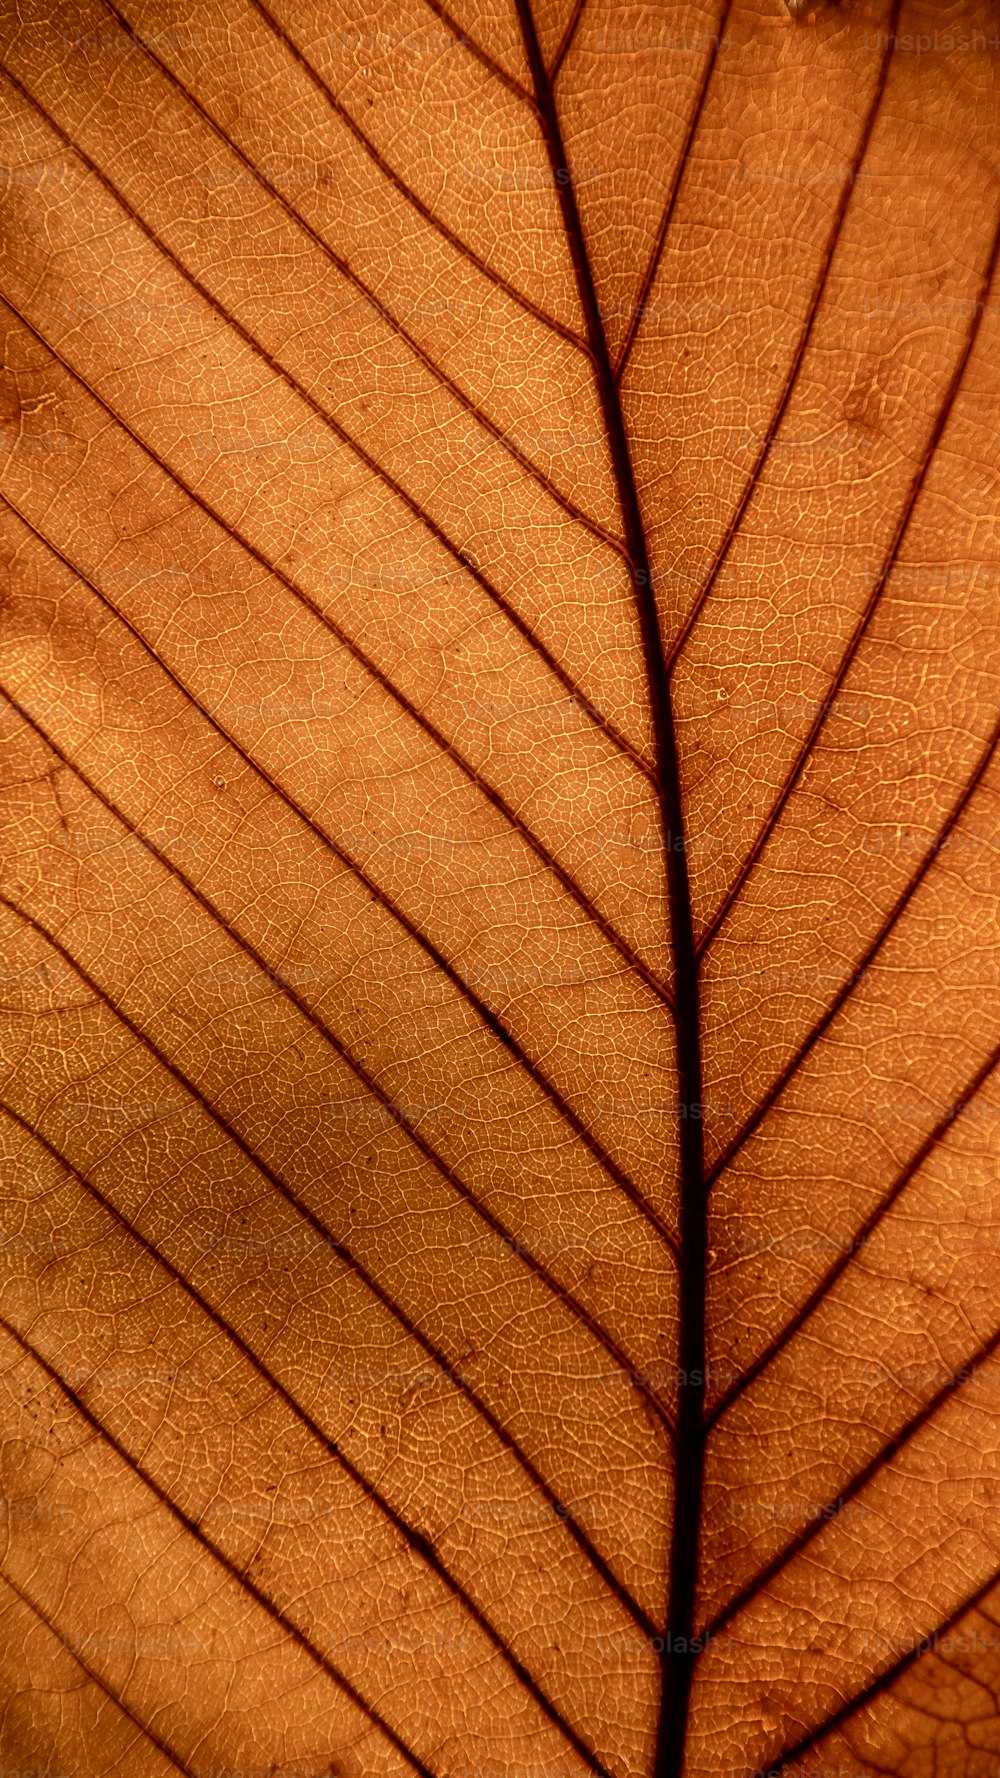 Leaf Wallpaper Pictures | Download Free Images on Unsplash